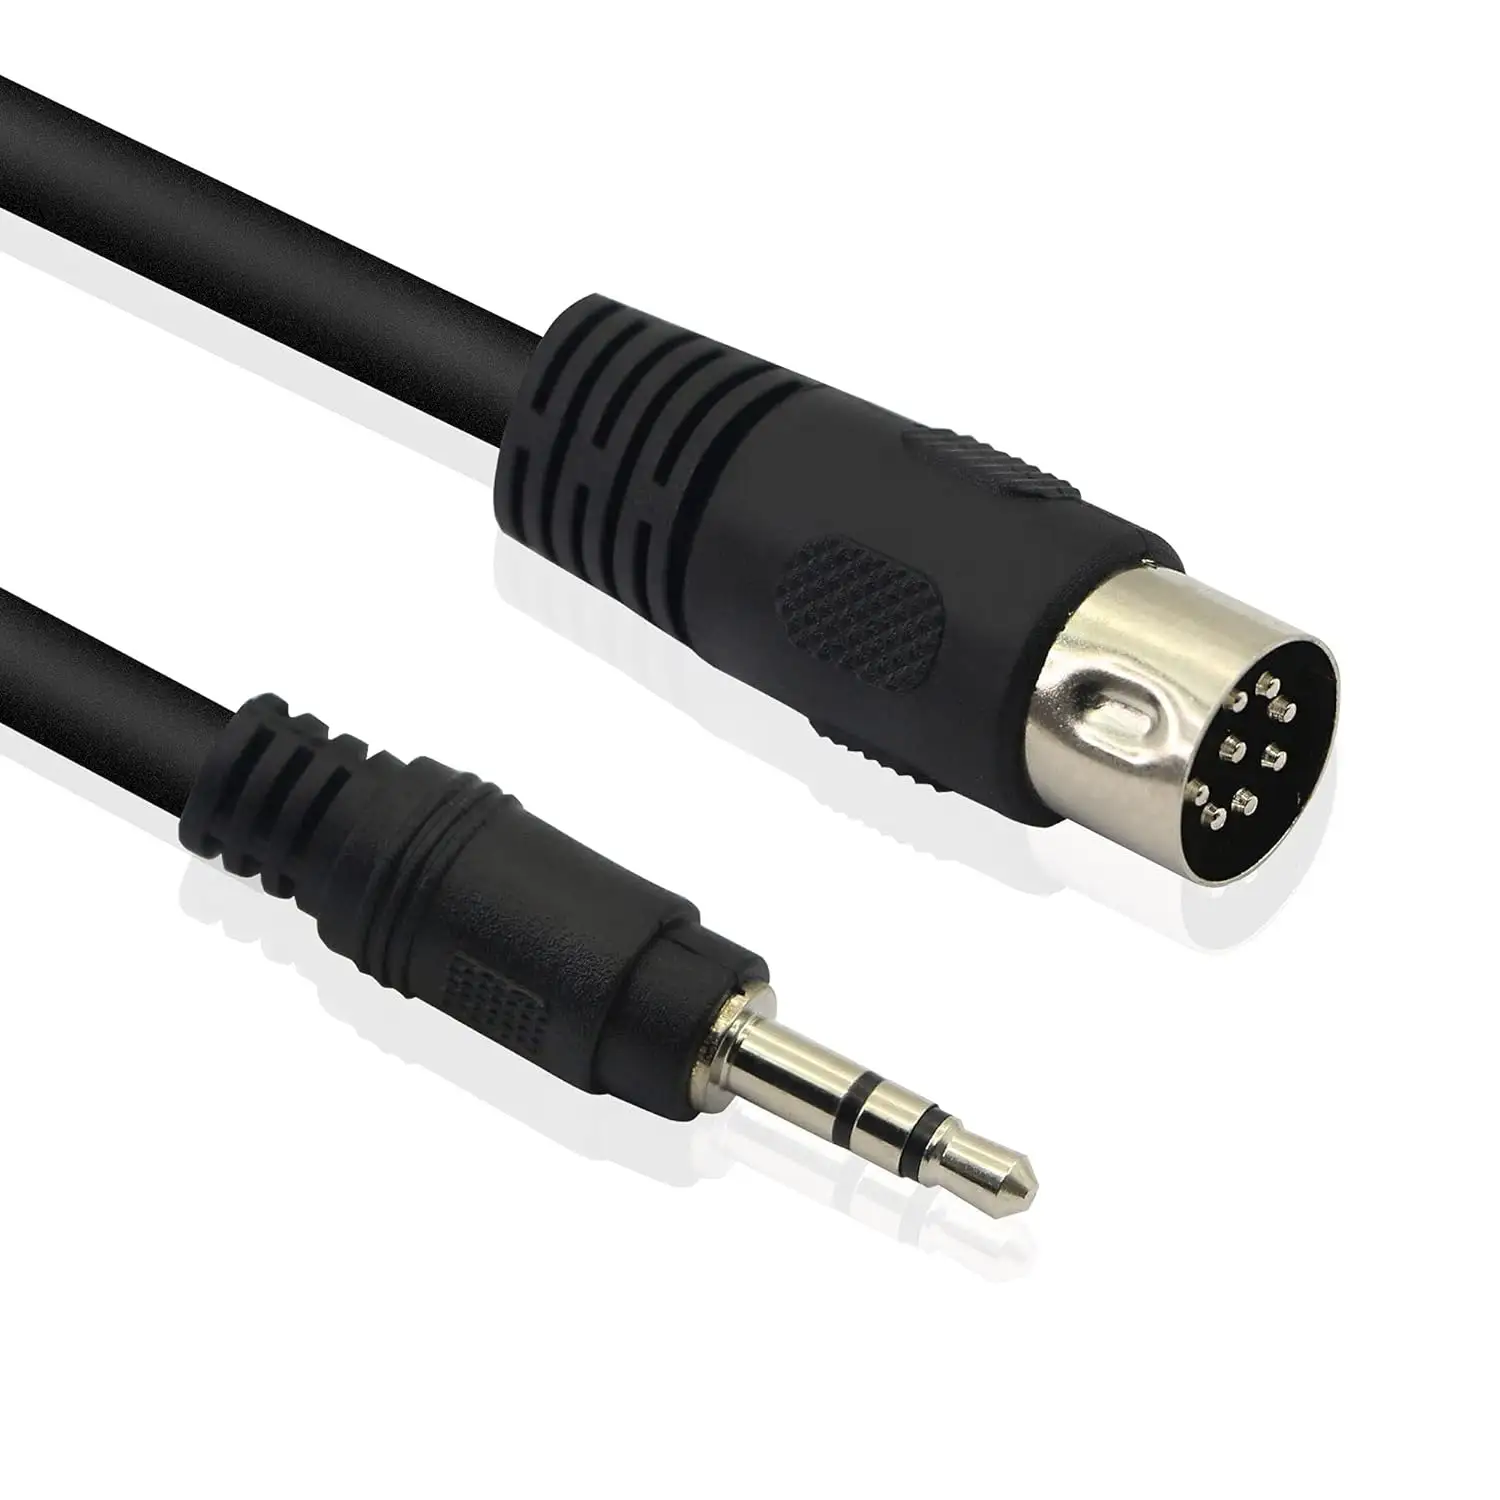 Cable DIN de 8 pines a 3,5mm macho a 3,5mm TRS macho convertidor estéreo Cable de audio para MP3, PC, TV, Android a estéreo Vintage